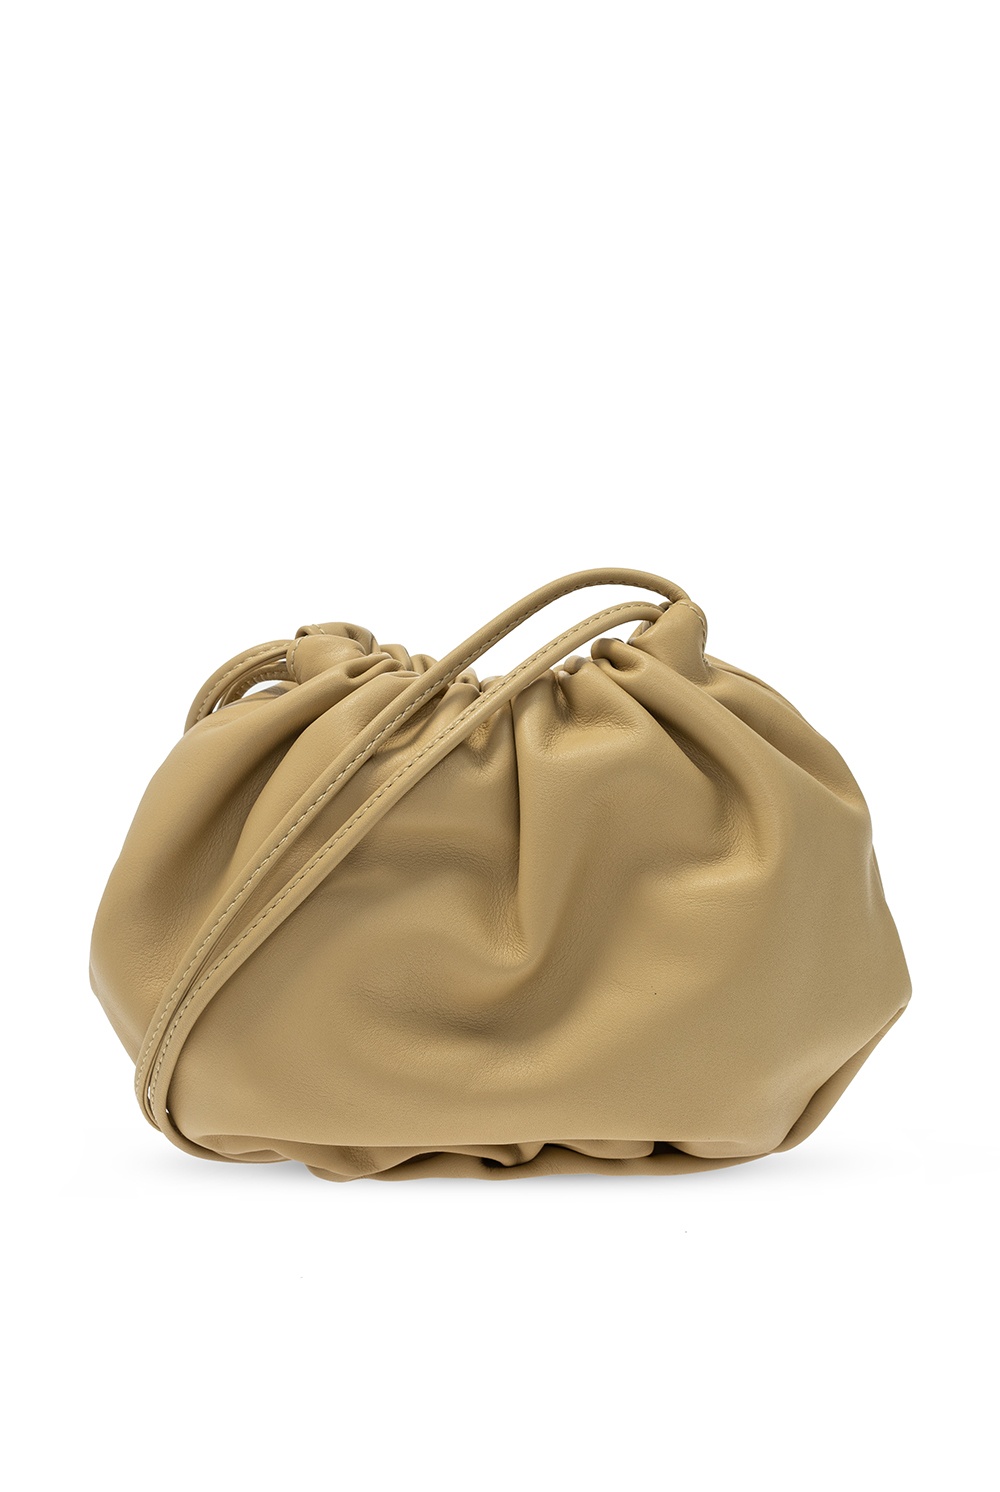 mum's review of the Bottega Veneta mini loop bag ☺️ 10/10 recommend!!